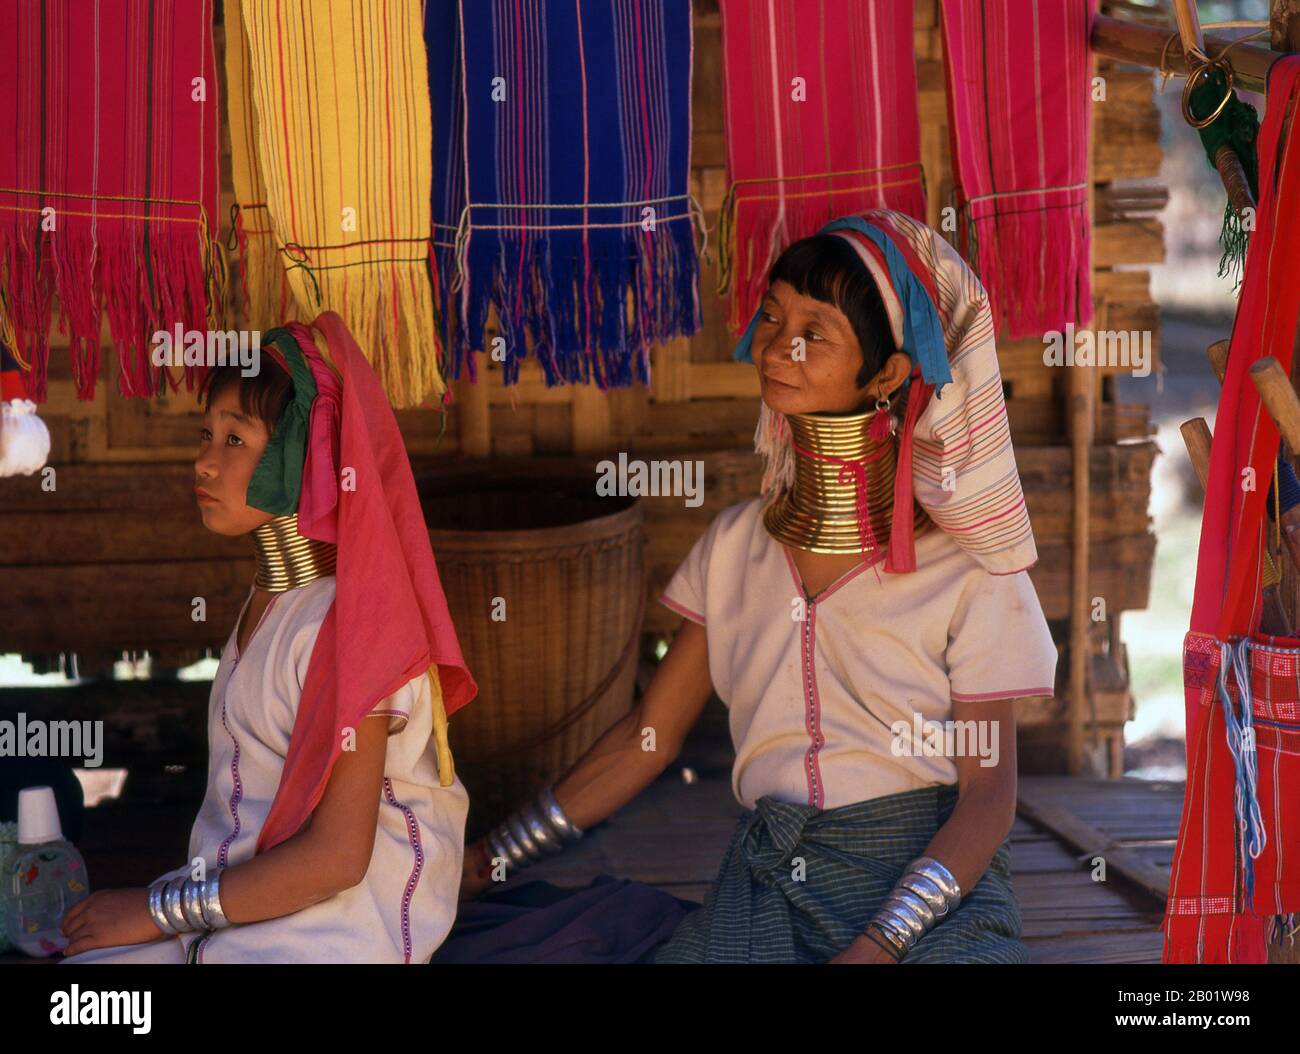 Thailand: Padaung (Long Neck Karen) Frau und Kind, Dorf in der Nähe von Mae Hong Sohn. Die Padaung oder Kayan Lahwi oder langhalsige Karen sind eine Untergruppe der Kayan, eine Mischung aus LAWI-Stämmen, Kayan-Stämmen und mehreren anderen Stämmen. Kayan sind eine Untergruppe der Roten Karen (Karenni), eine tibeto-burmanische ethnische Minderheit von Birma (Myanmar). Stockfoto